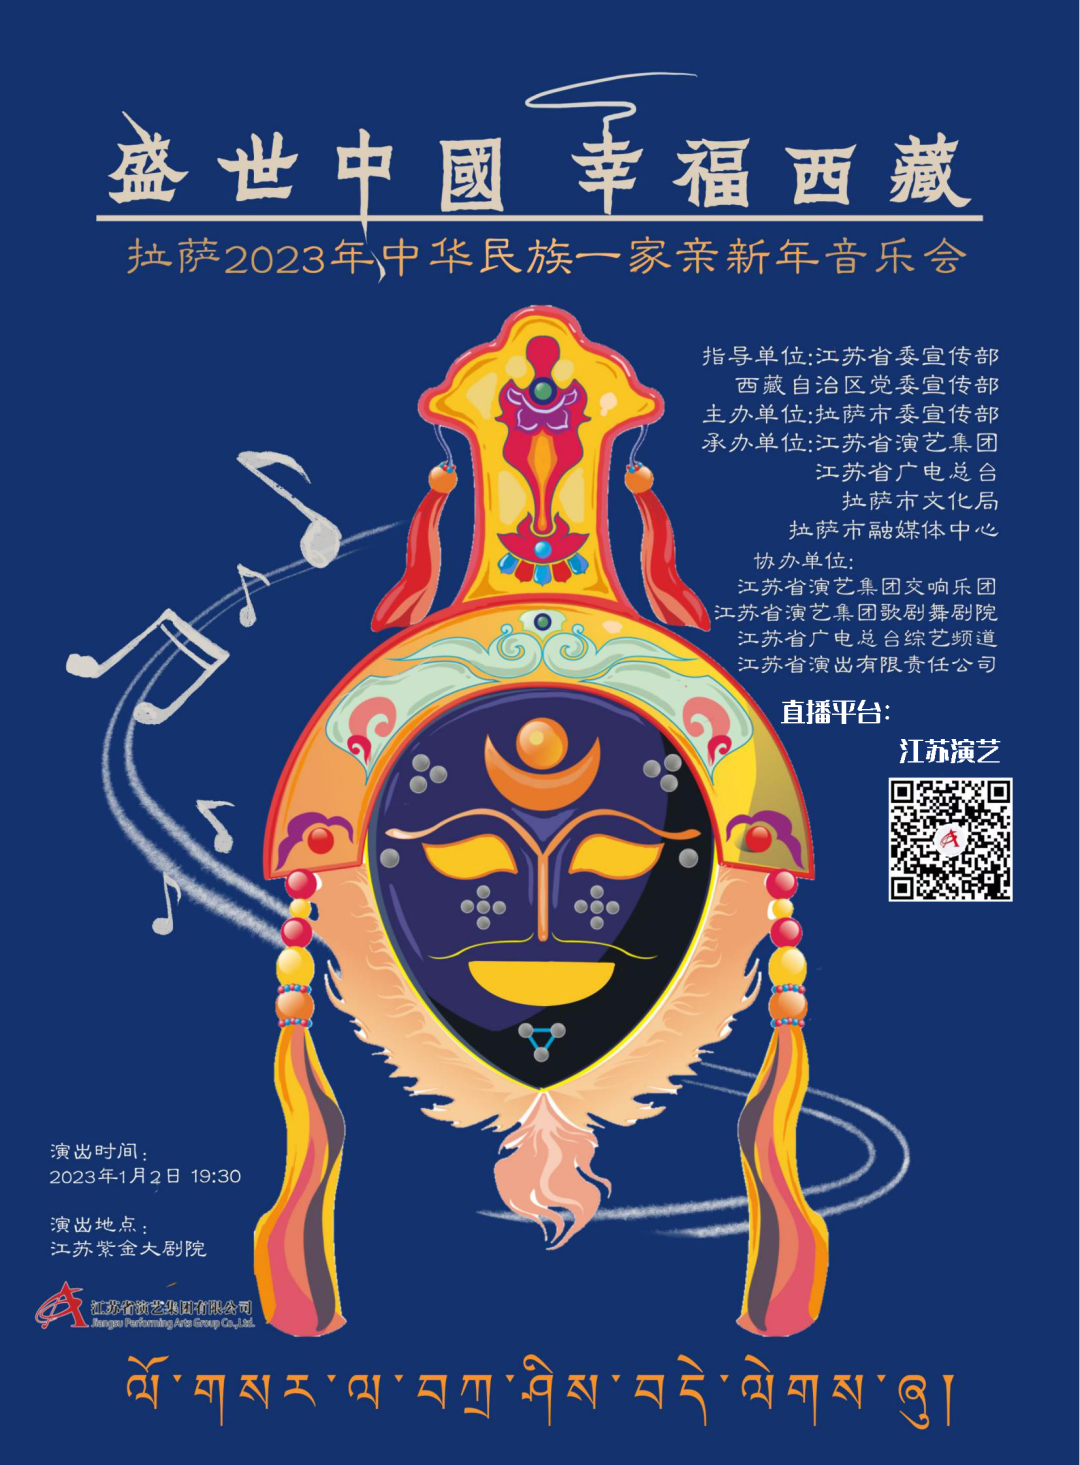 直播预告 | 盛世中国 幸福西藏 拉萨2023年中华民族一家亲新年音乐会燃情来袭